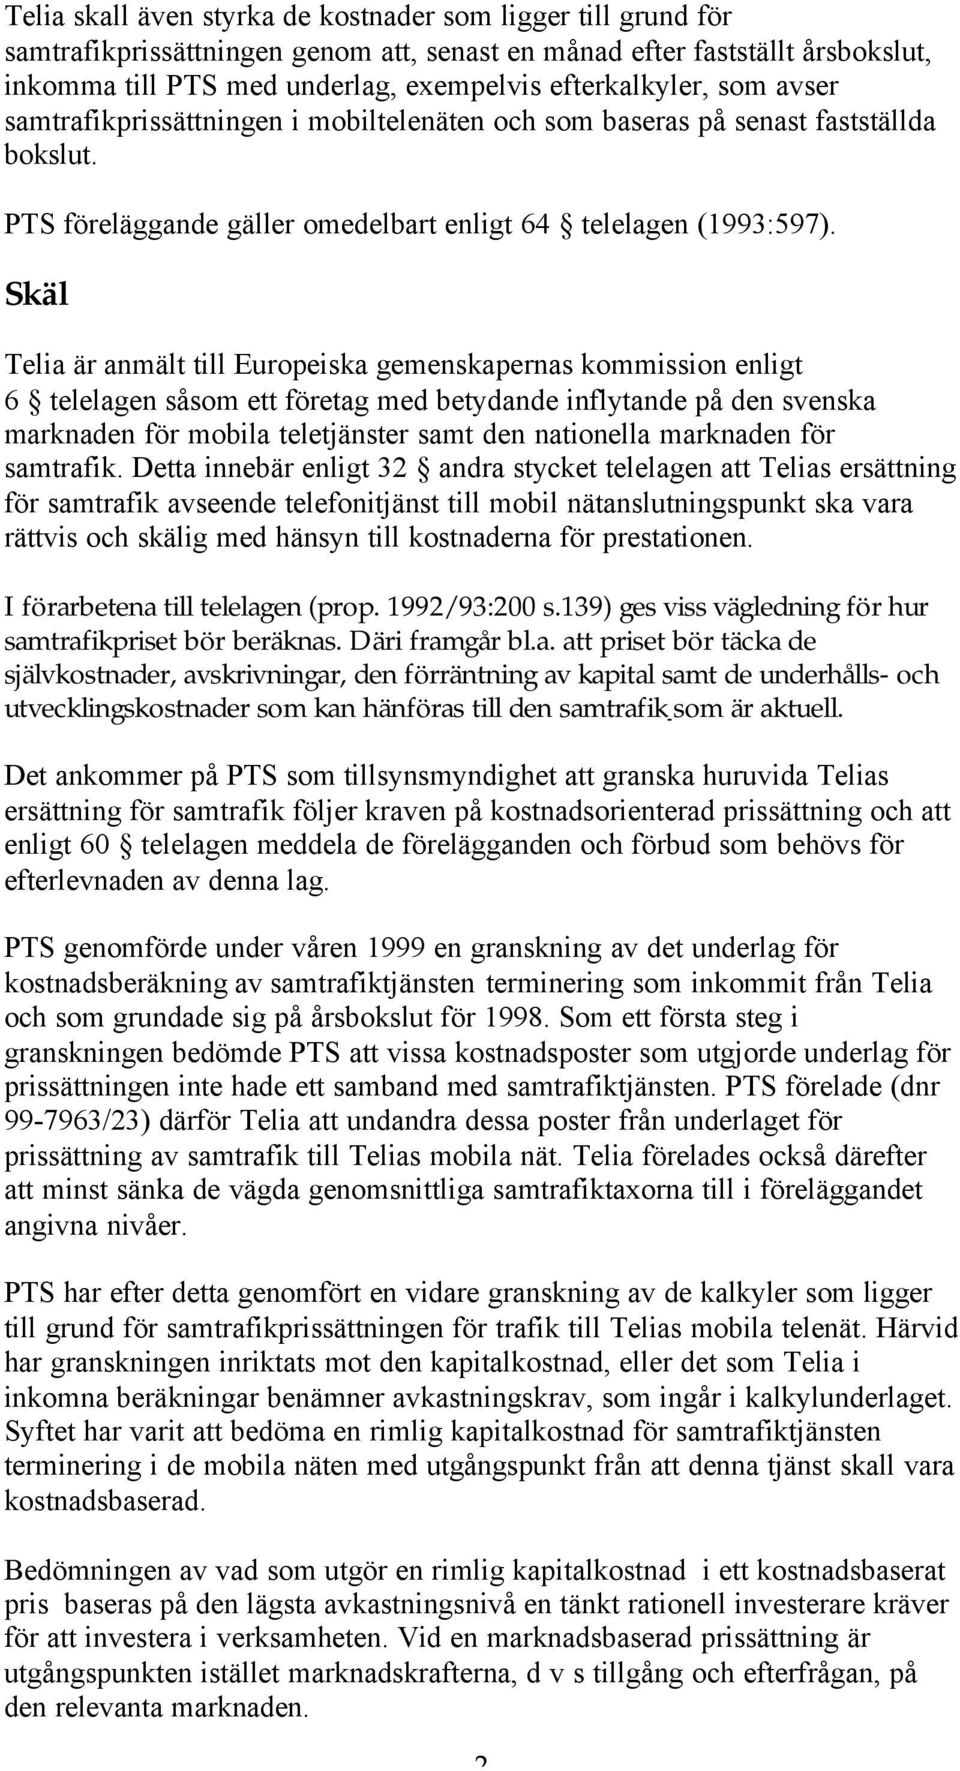 Skäl Telia är anmält till Europeiska gemenskapernas kommission enligt 6 telelagen såsom ett företag med betydande inflytande på den svenska marknaden för mobila teletjänster samt den nationella